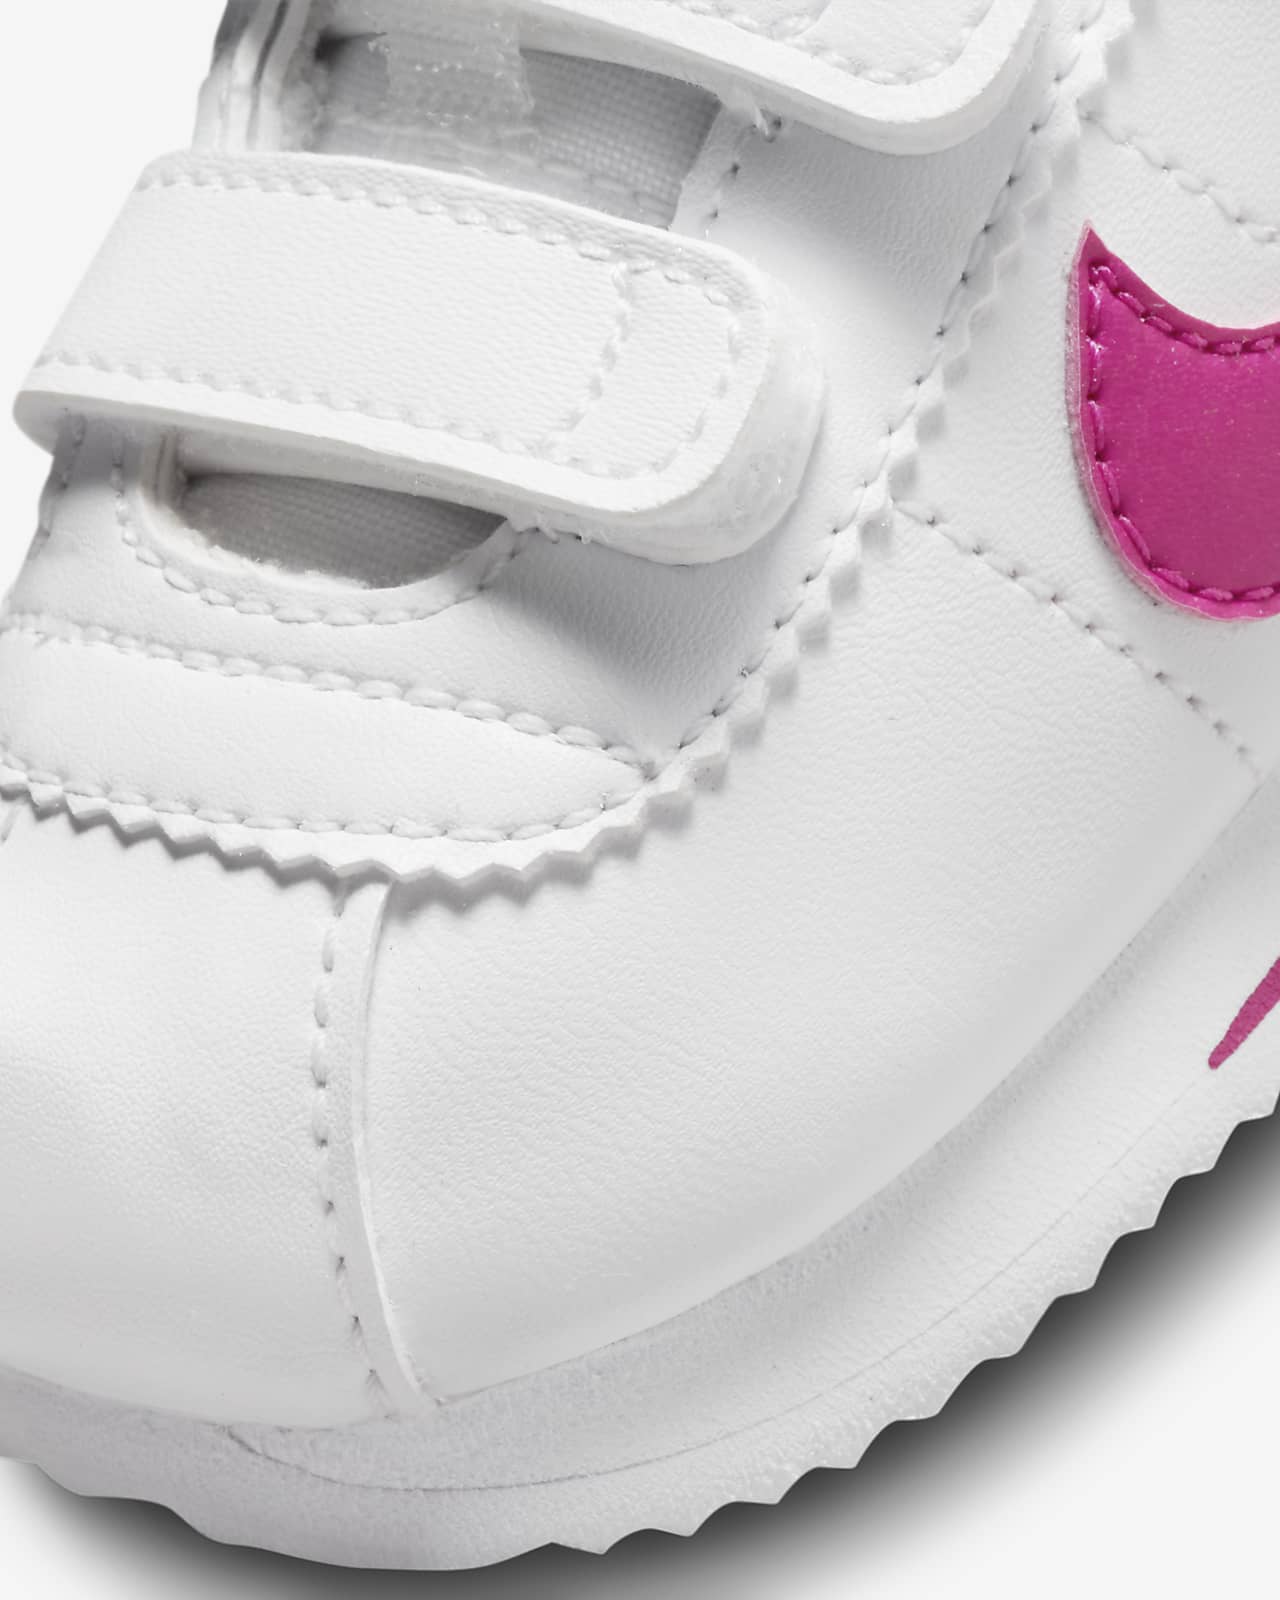 Perseguir es inutil Distribuir Nike Cortez Basic Baby/Toddler Shoes. Nike.com